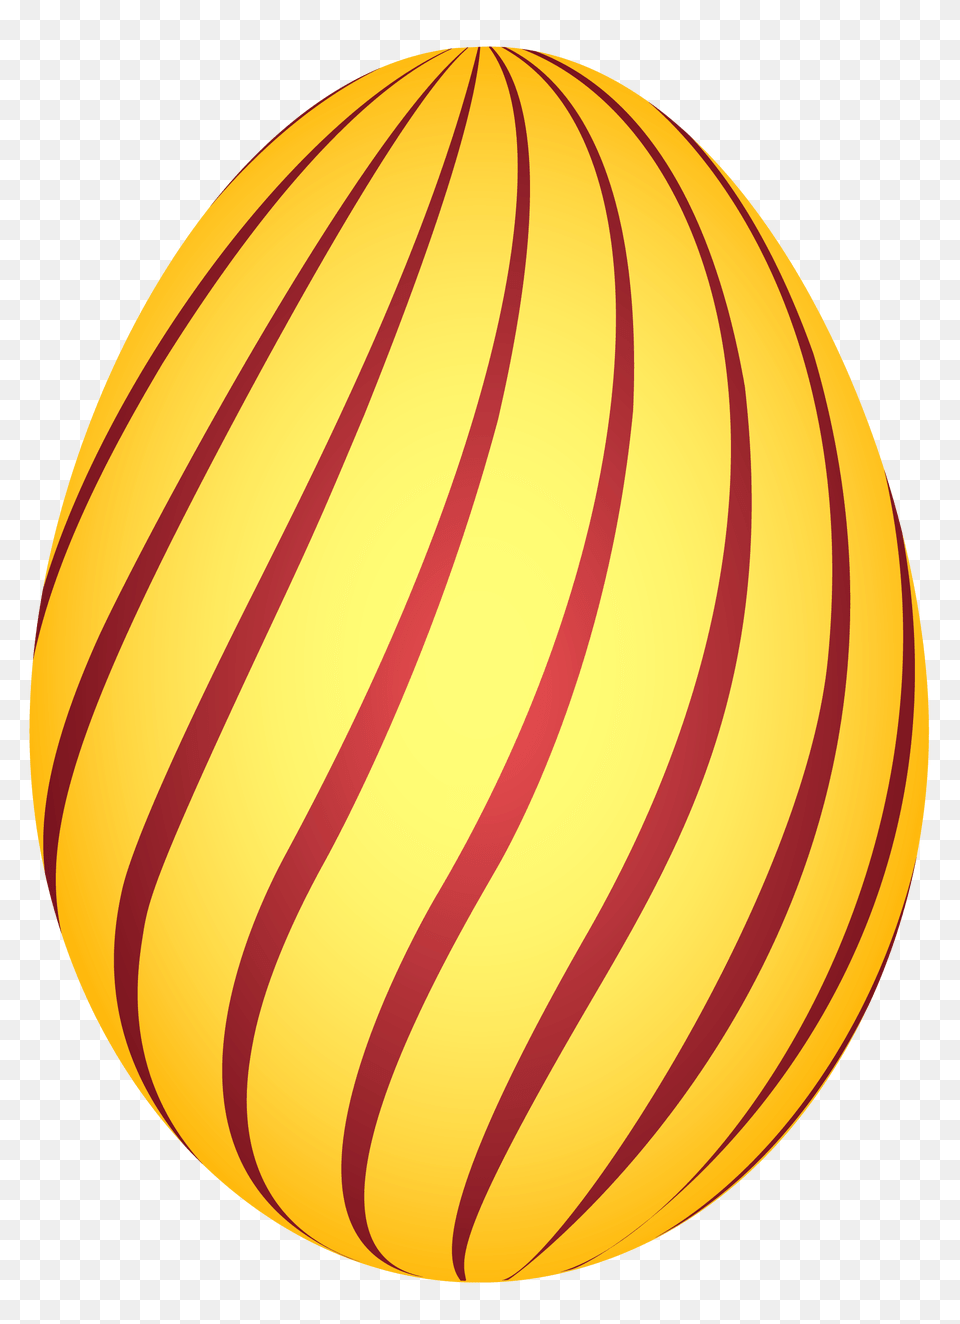 Egg Egg Clip Art Egg Images Sphere, Food Png Image